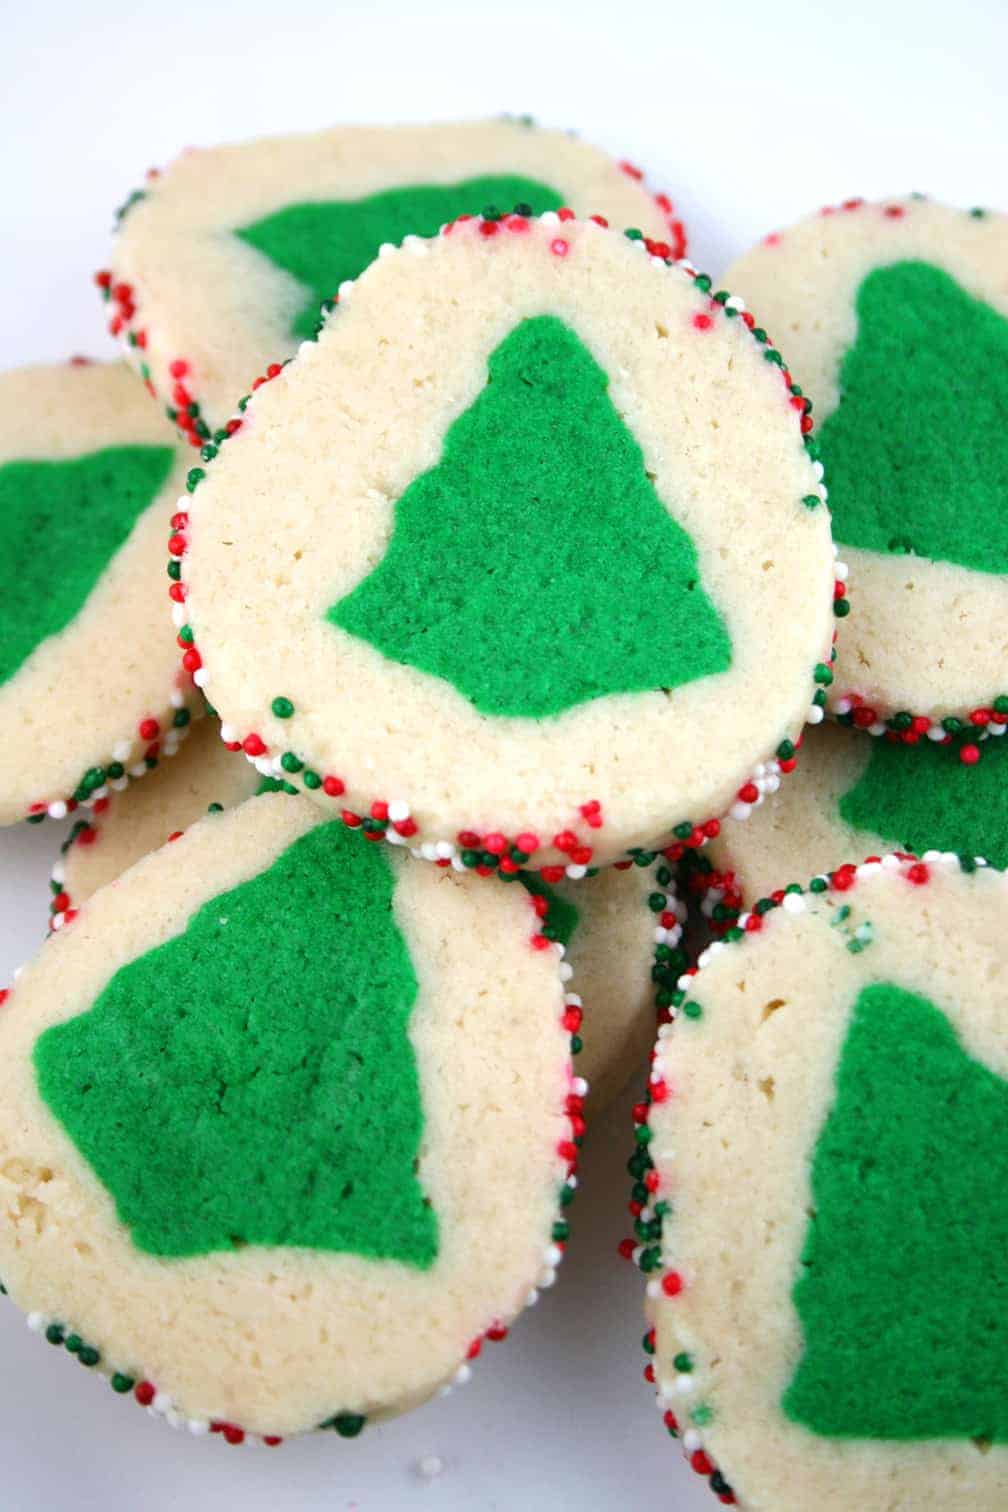 Wilton, Kitchen, Green Christmas Tree Cake Pan Wilton Great Condition  Takes A 2layer Mix